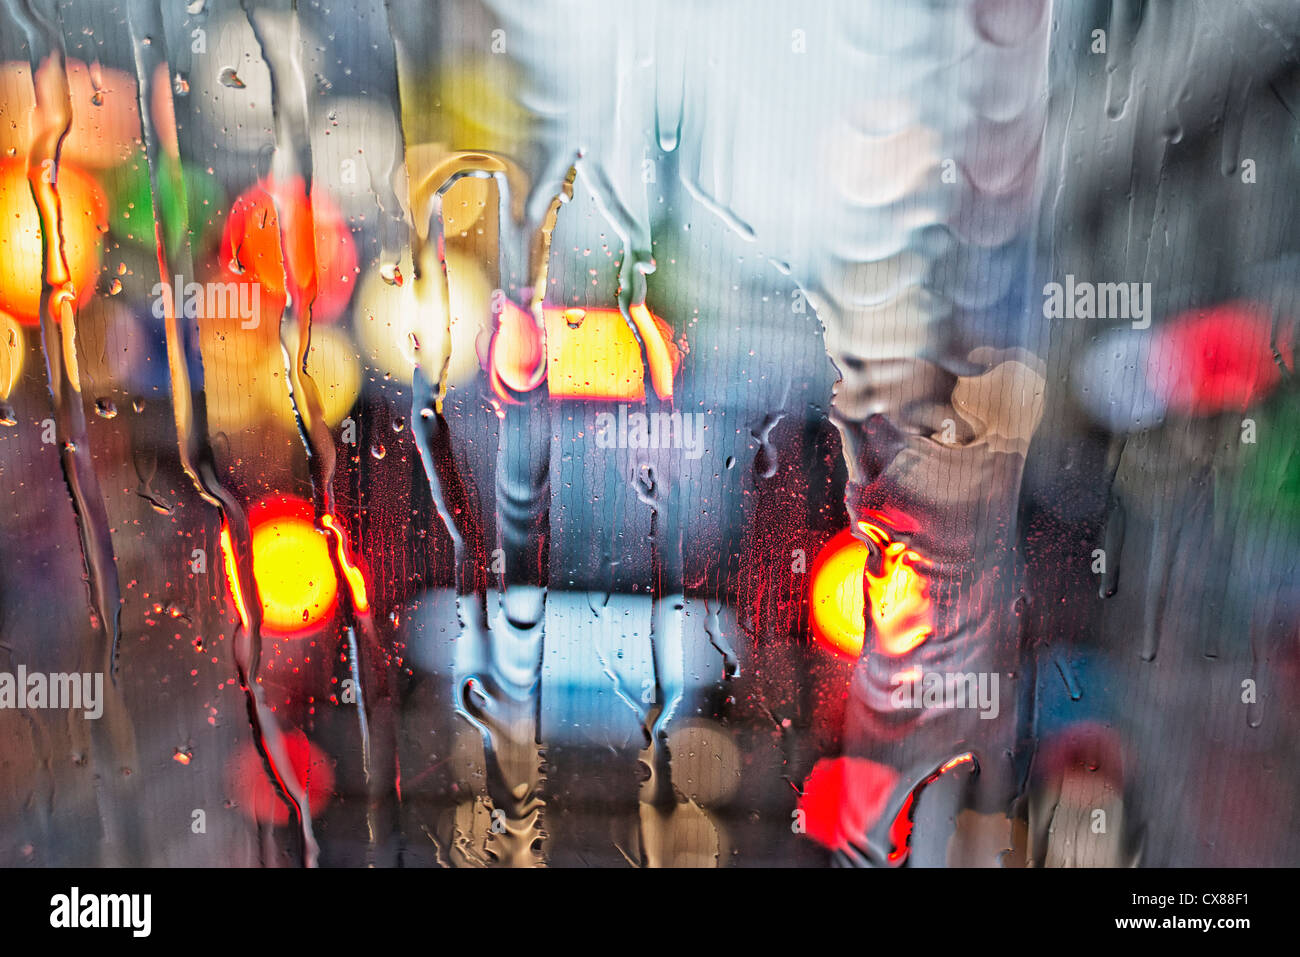 Vista de una de las luces traseras del coche a través de un parabrisas mojado; Ámsterdam, Holanda Foto de stock